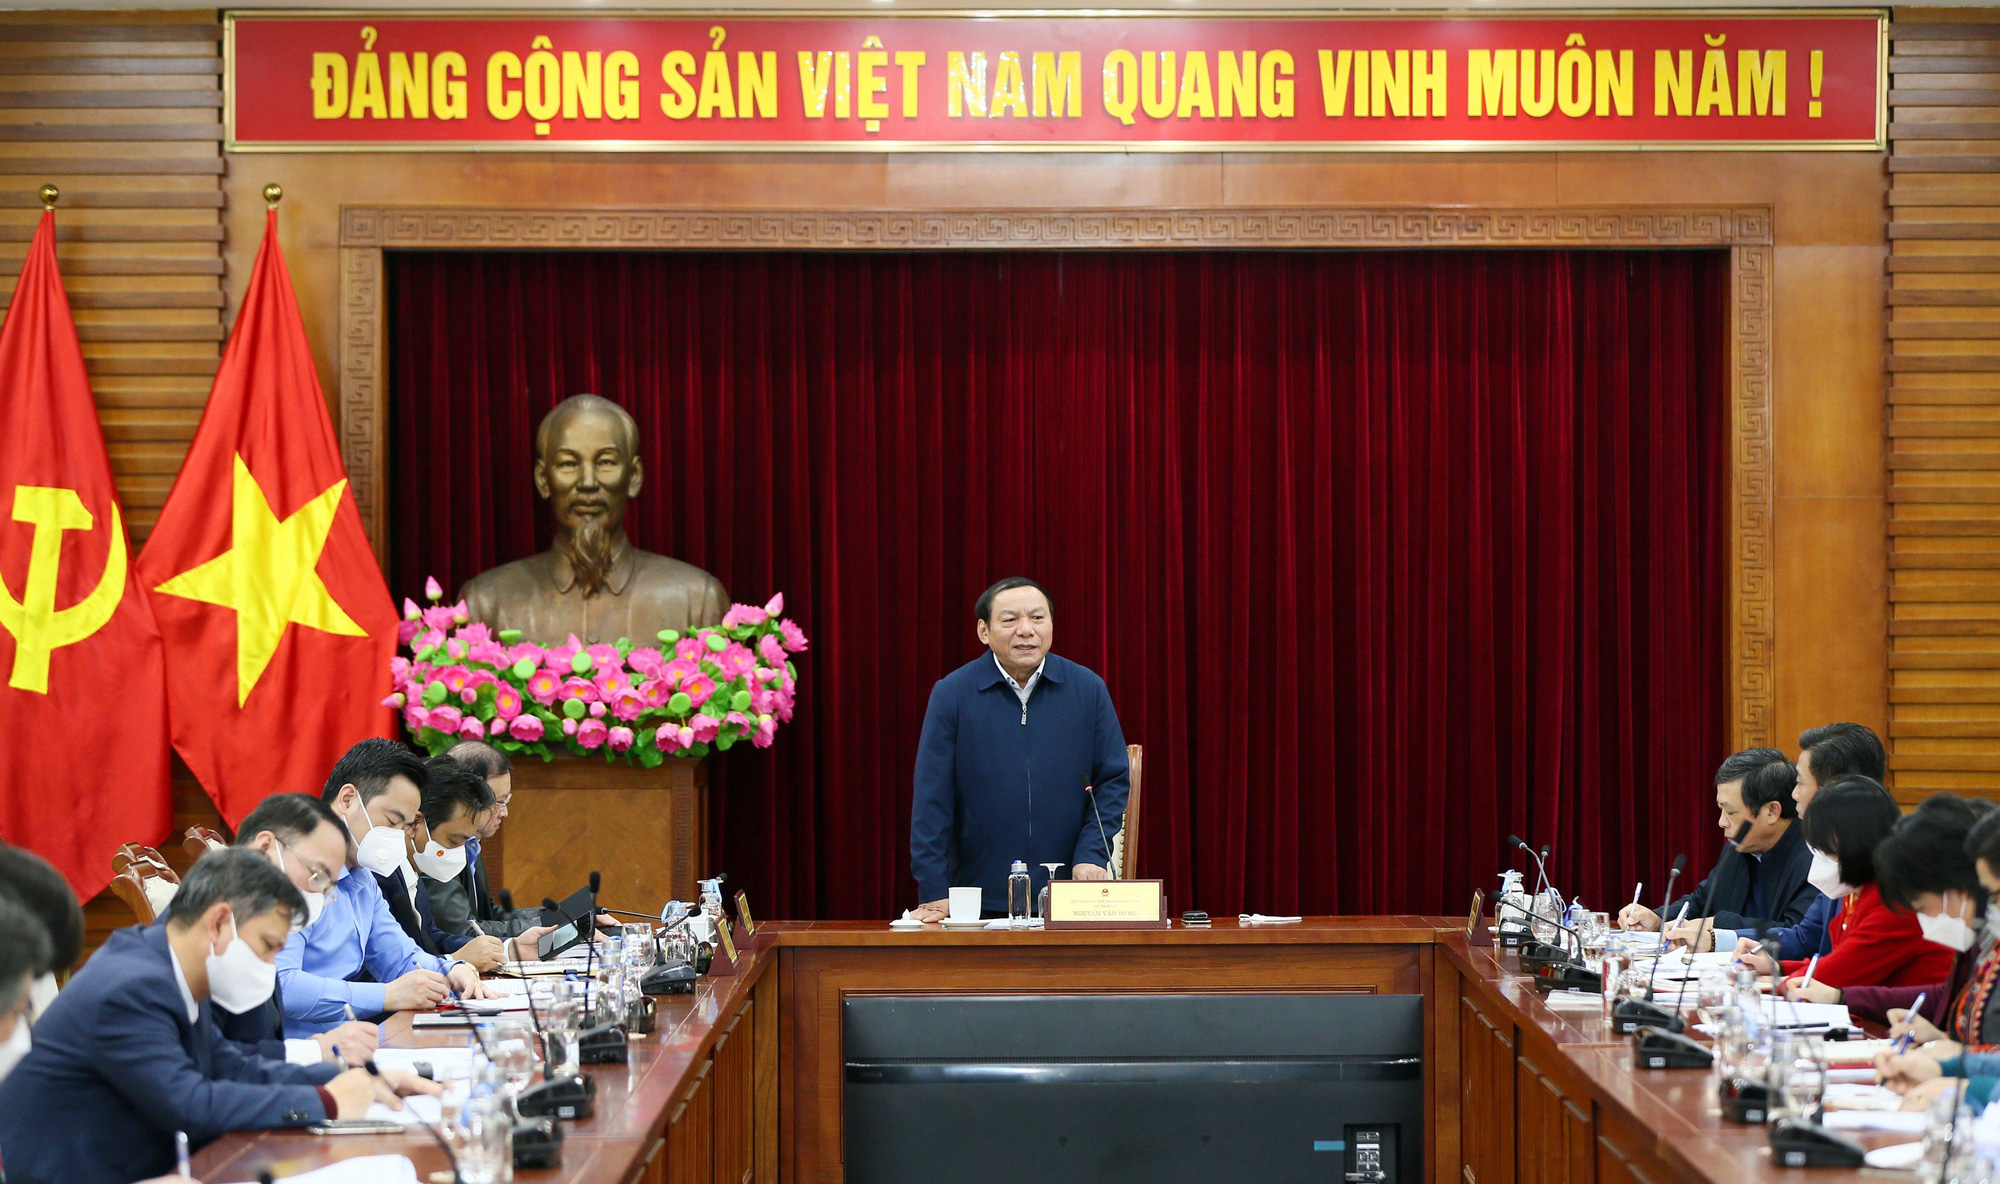 Bộ trưởng Nguyễn Văn Hùng nêu 6 nhiệm vụ trong tâm khi xây dựng Chương trình quốc gia về phát triển văn hóa - Ảnh 1.